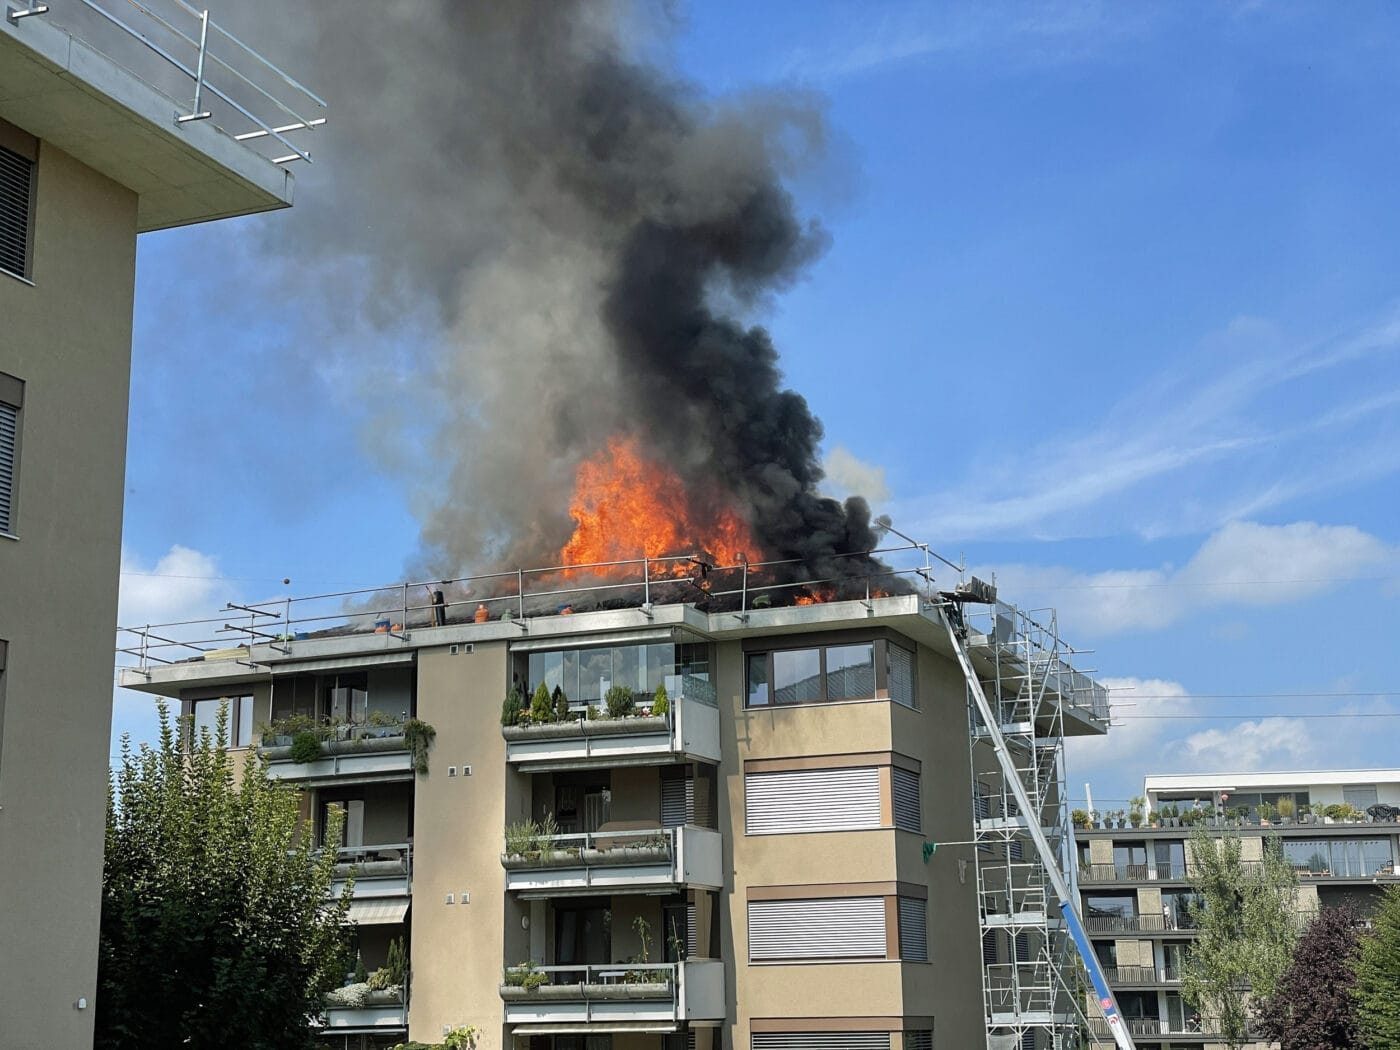 Dachstockbrand bei einem Mehrfamilienhaus – Brandursache ist noch unklar